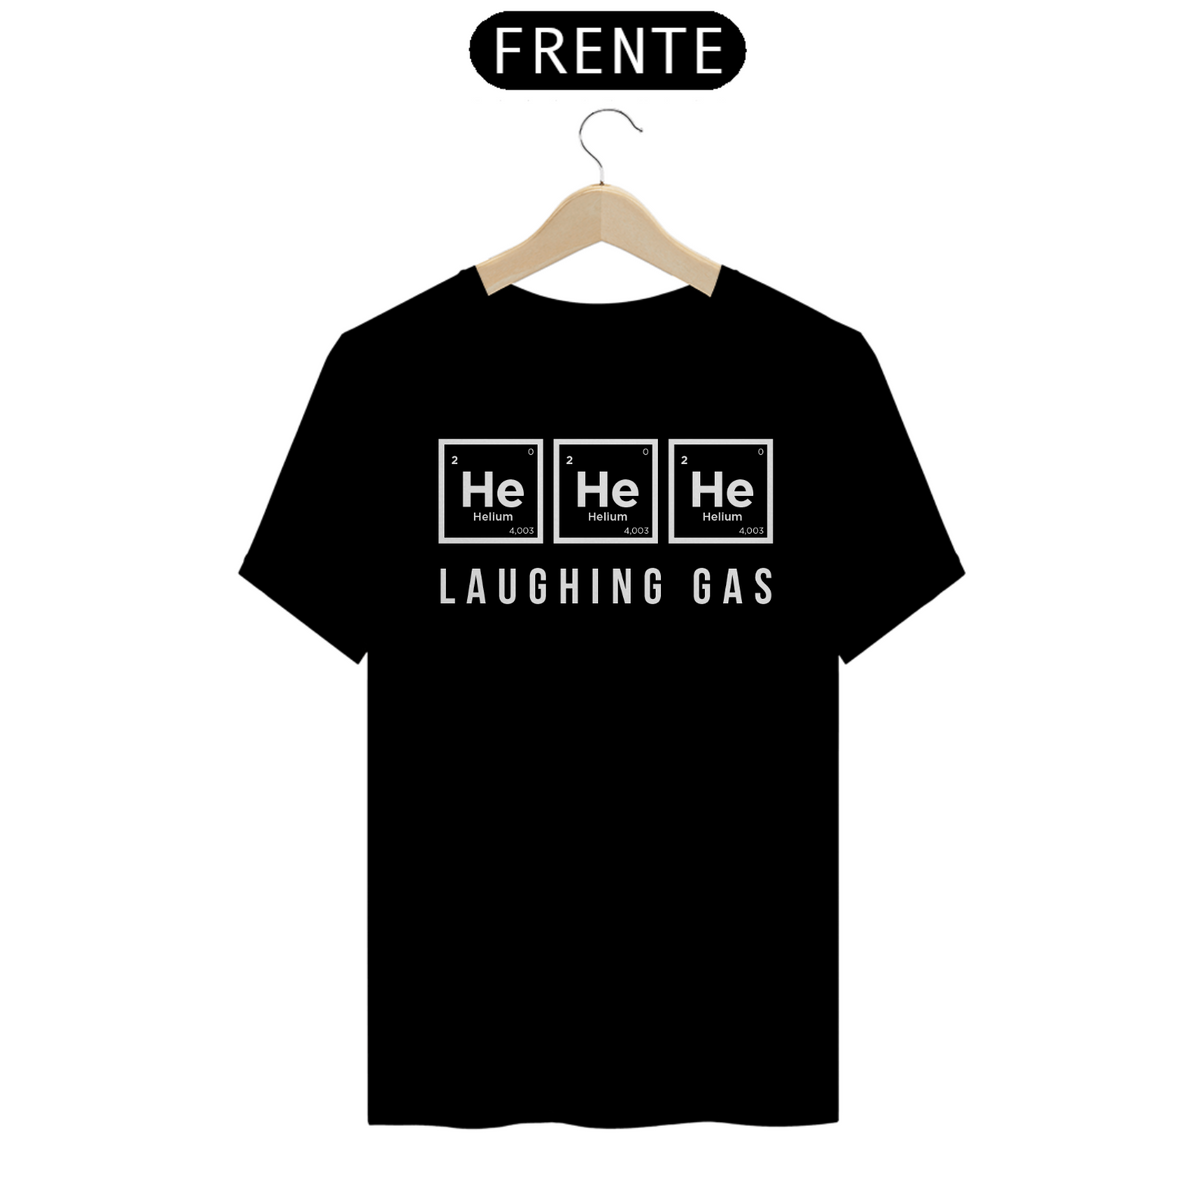 Nome do produto: He He He - Laughing Gas (cores escuras)